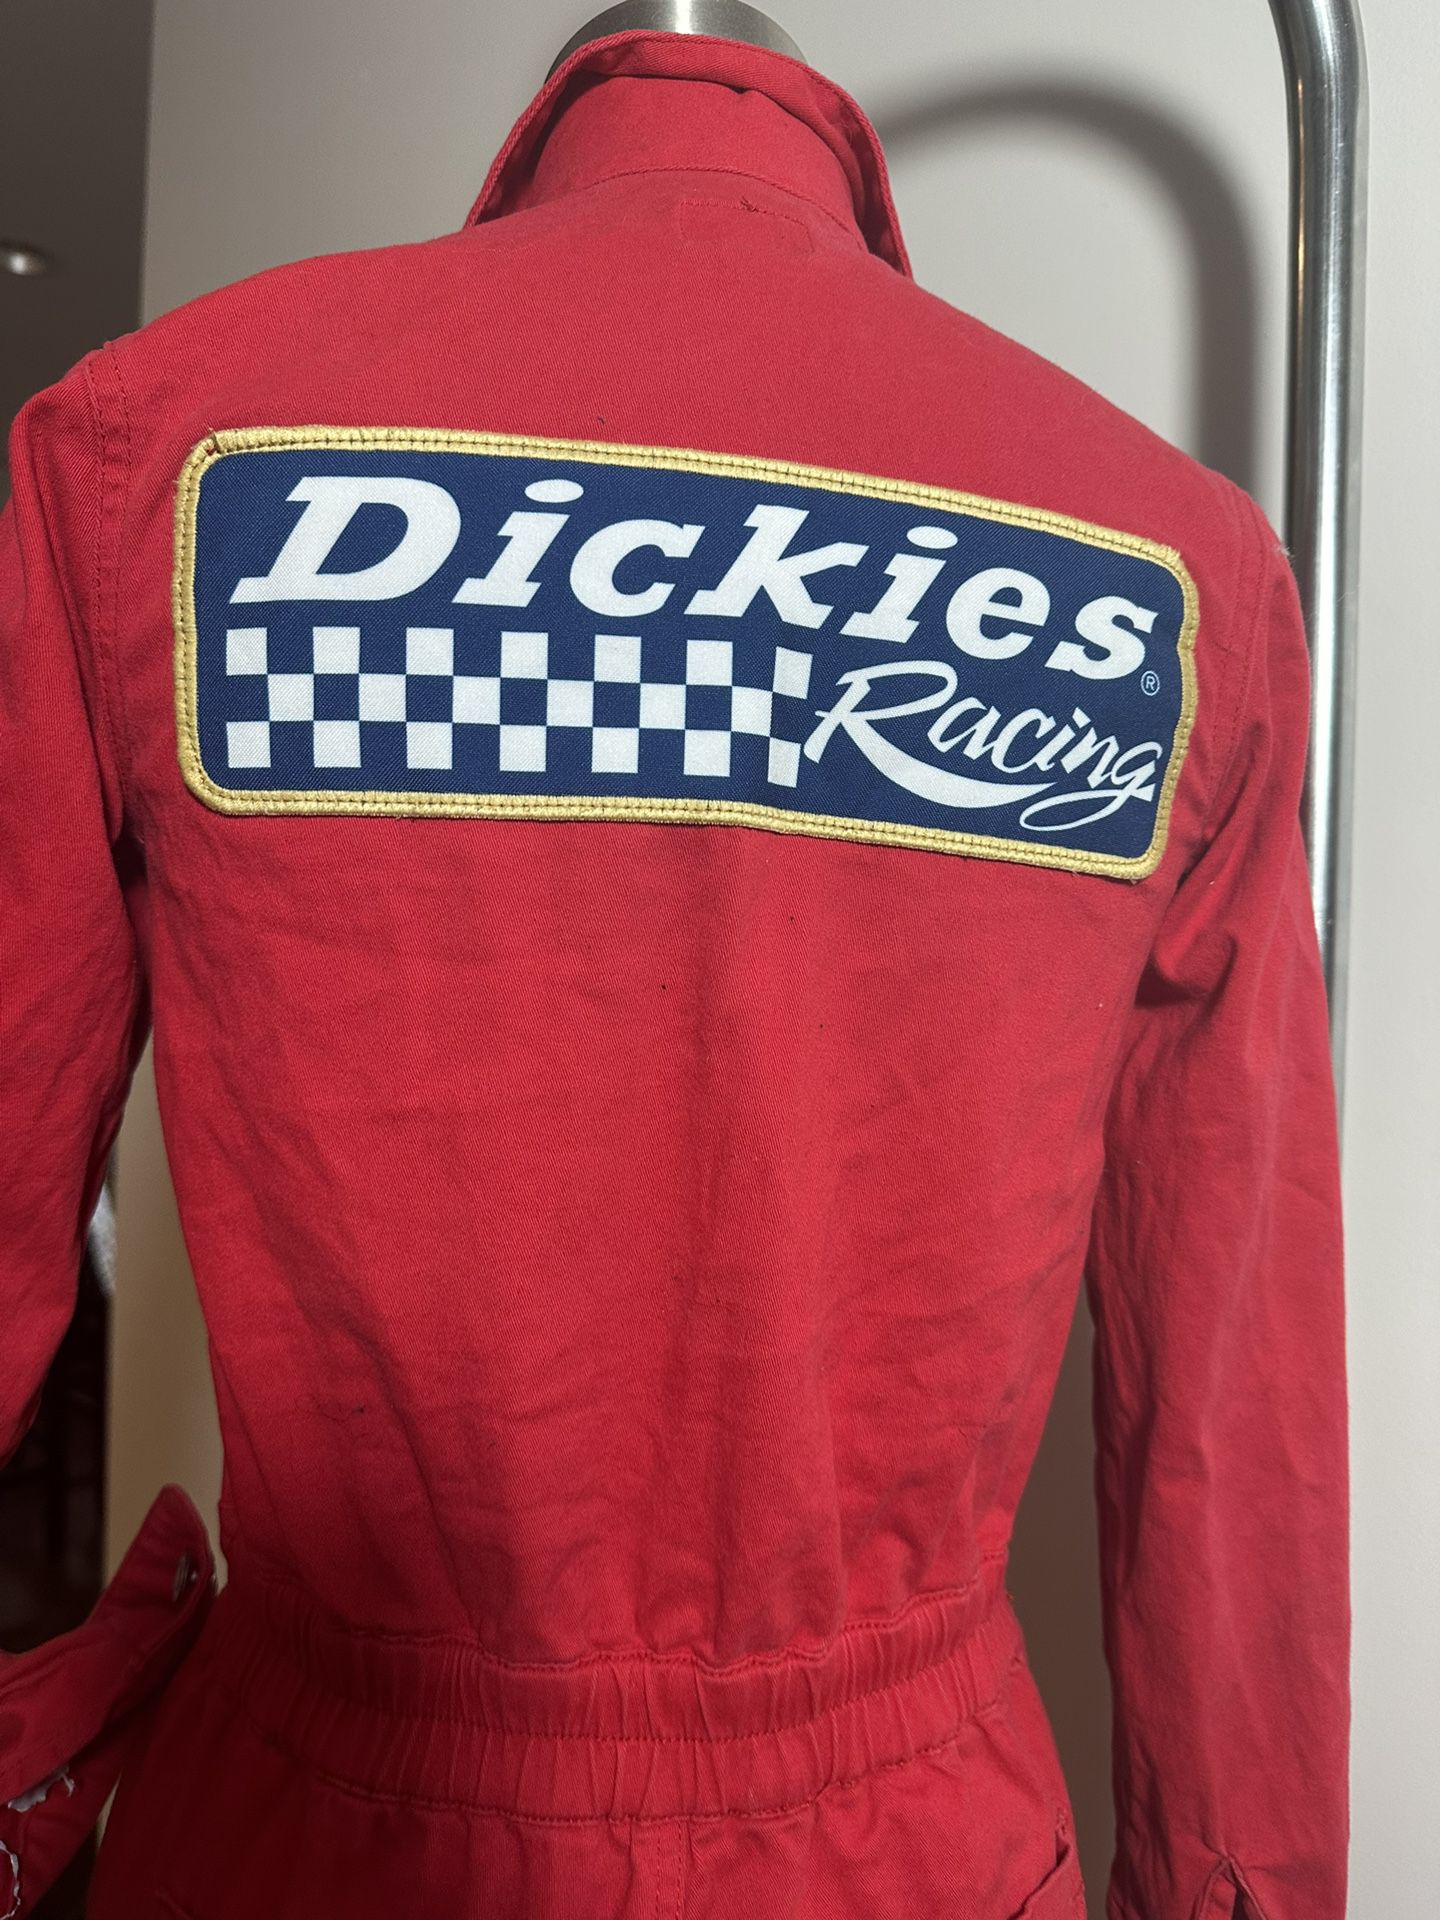 Dickies Racing Jumpsuit